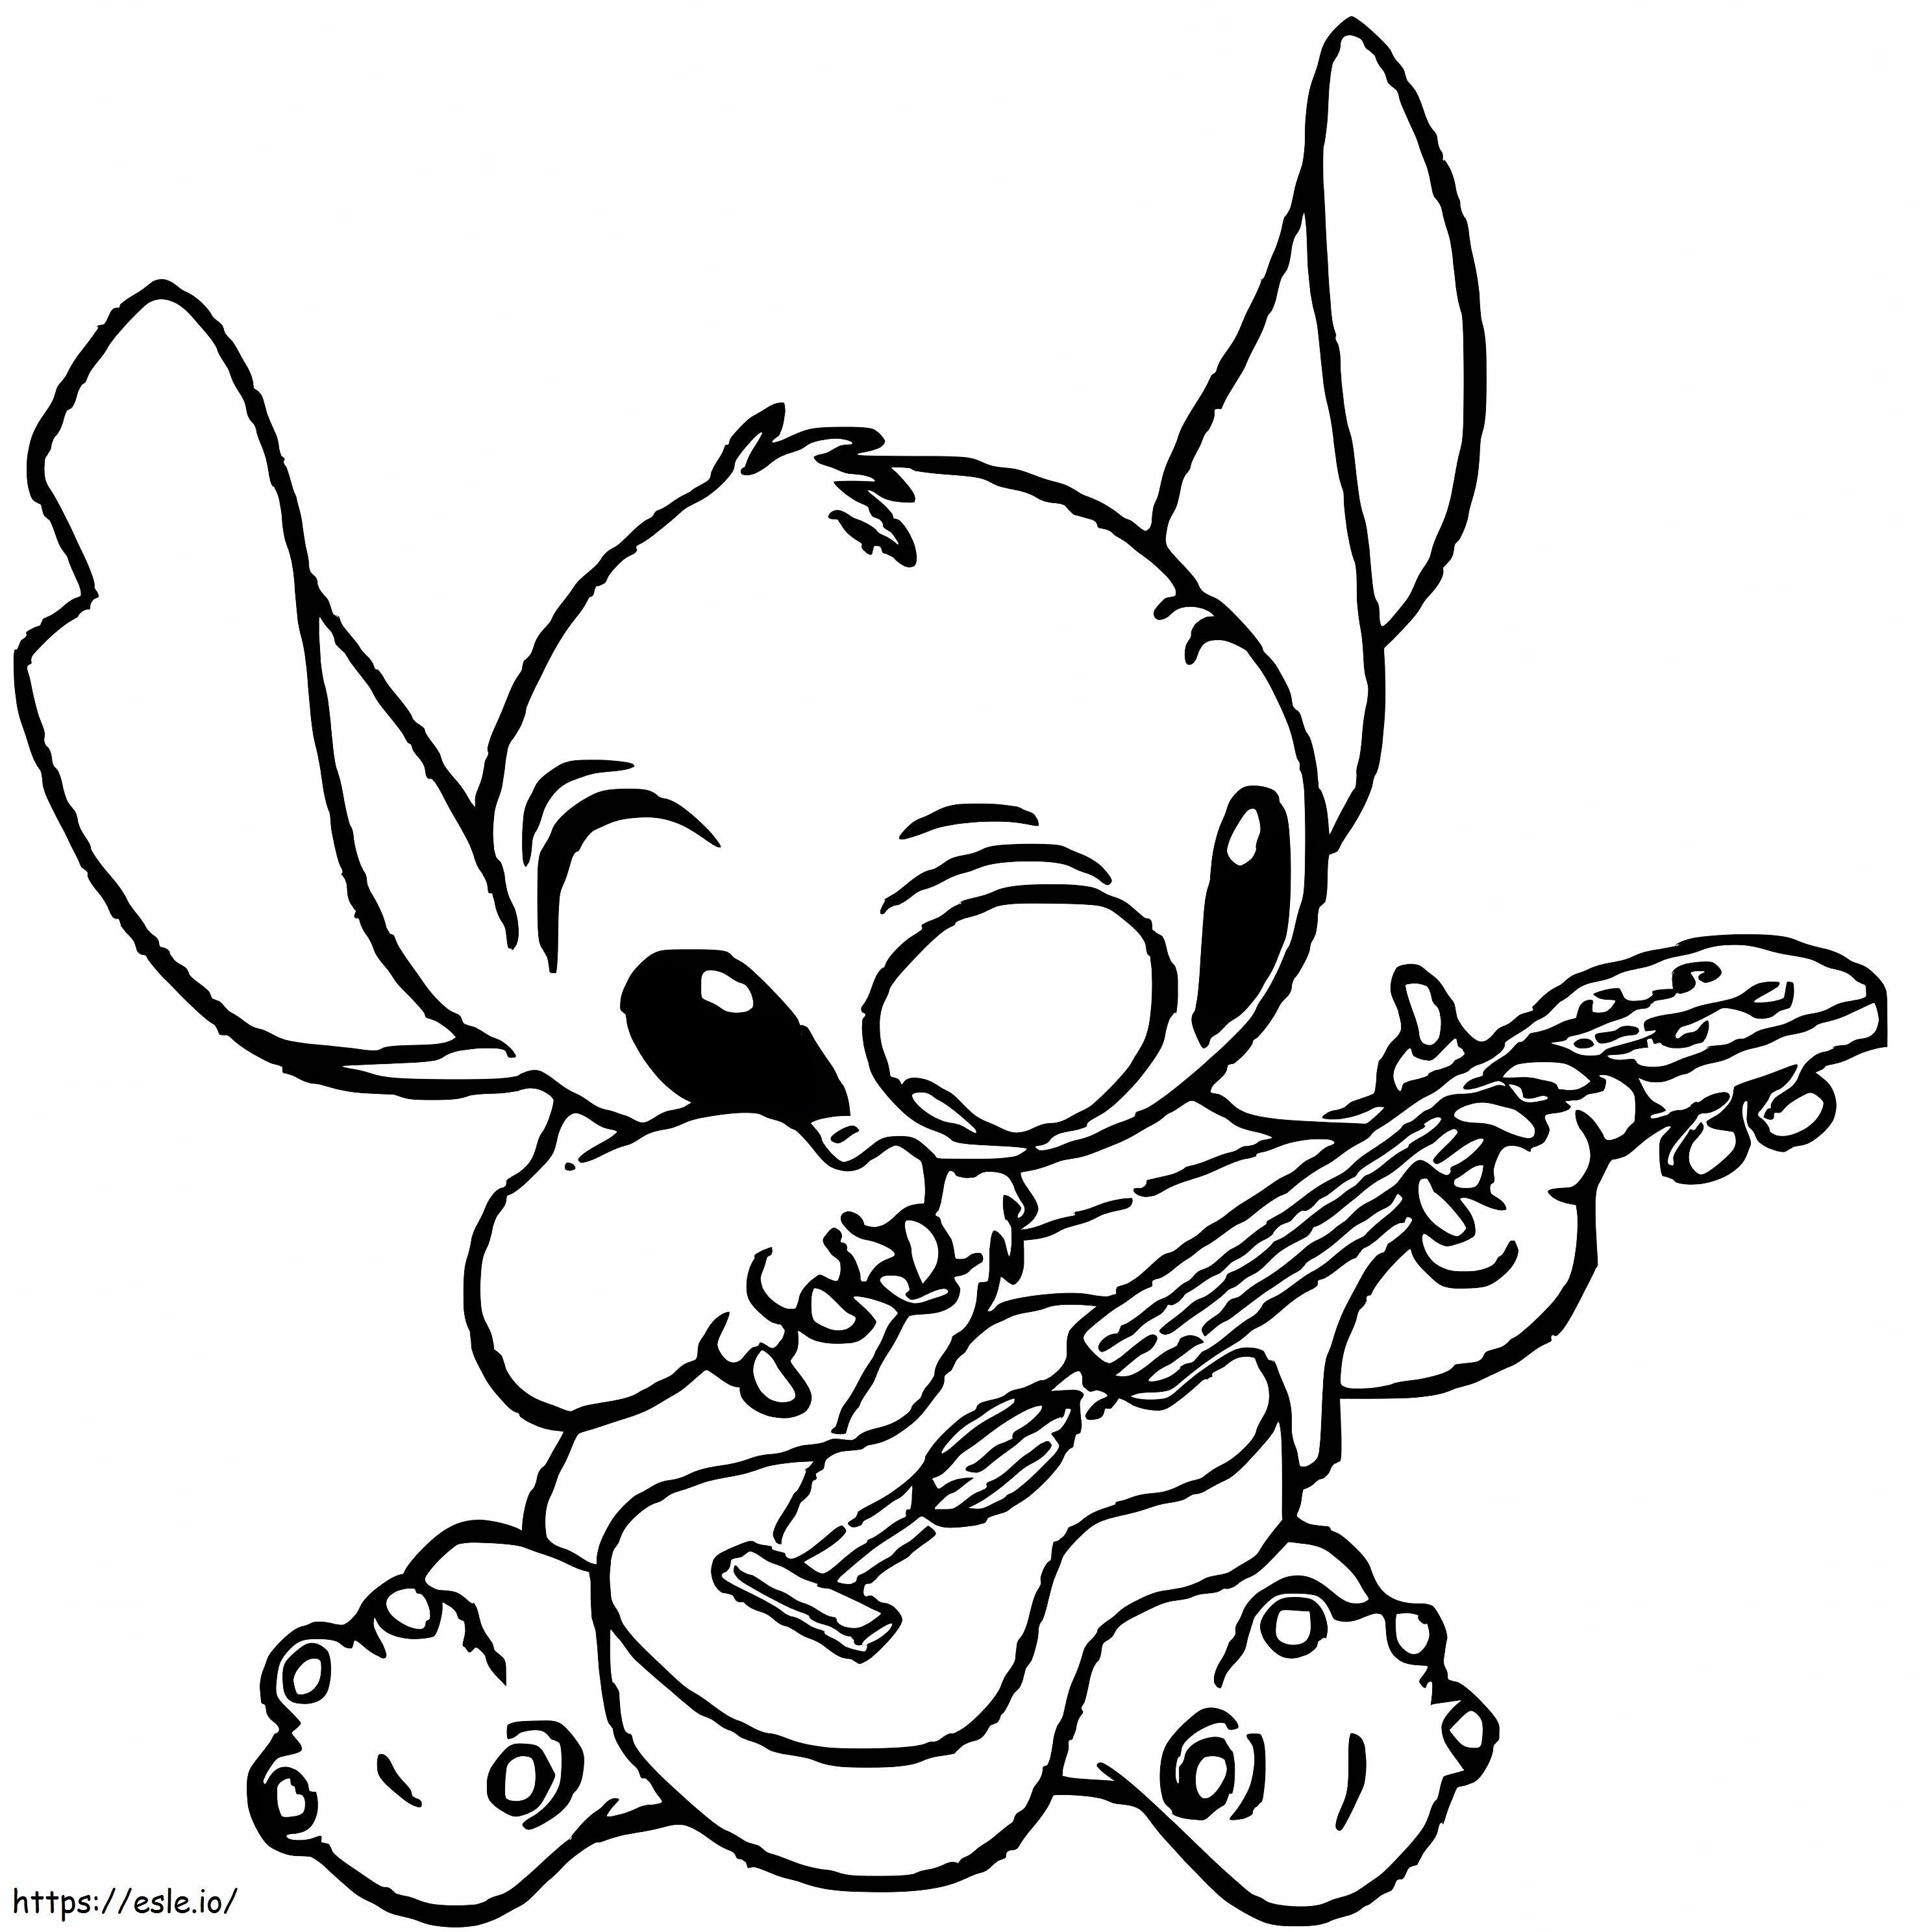 Stitch gra na gitarze kolorowanka